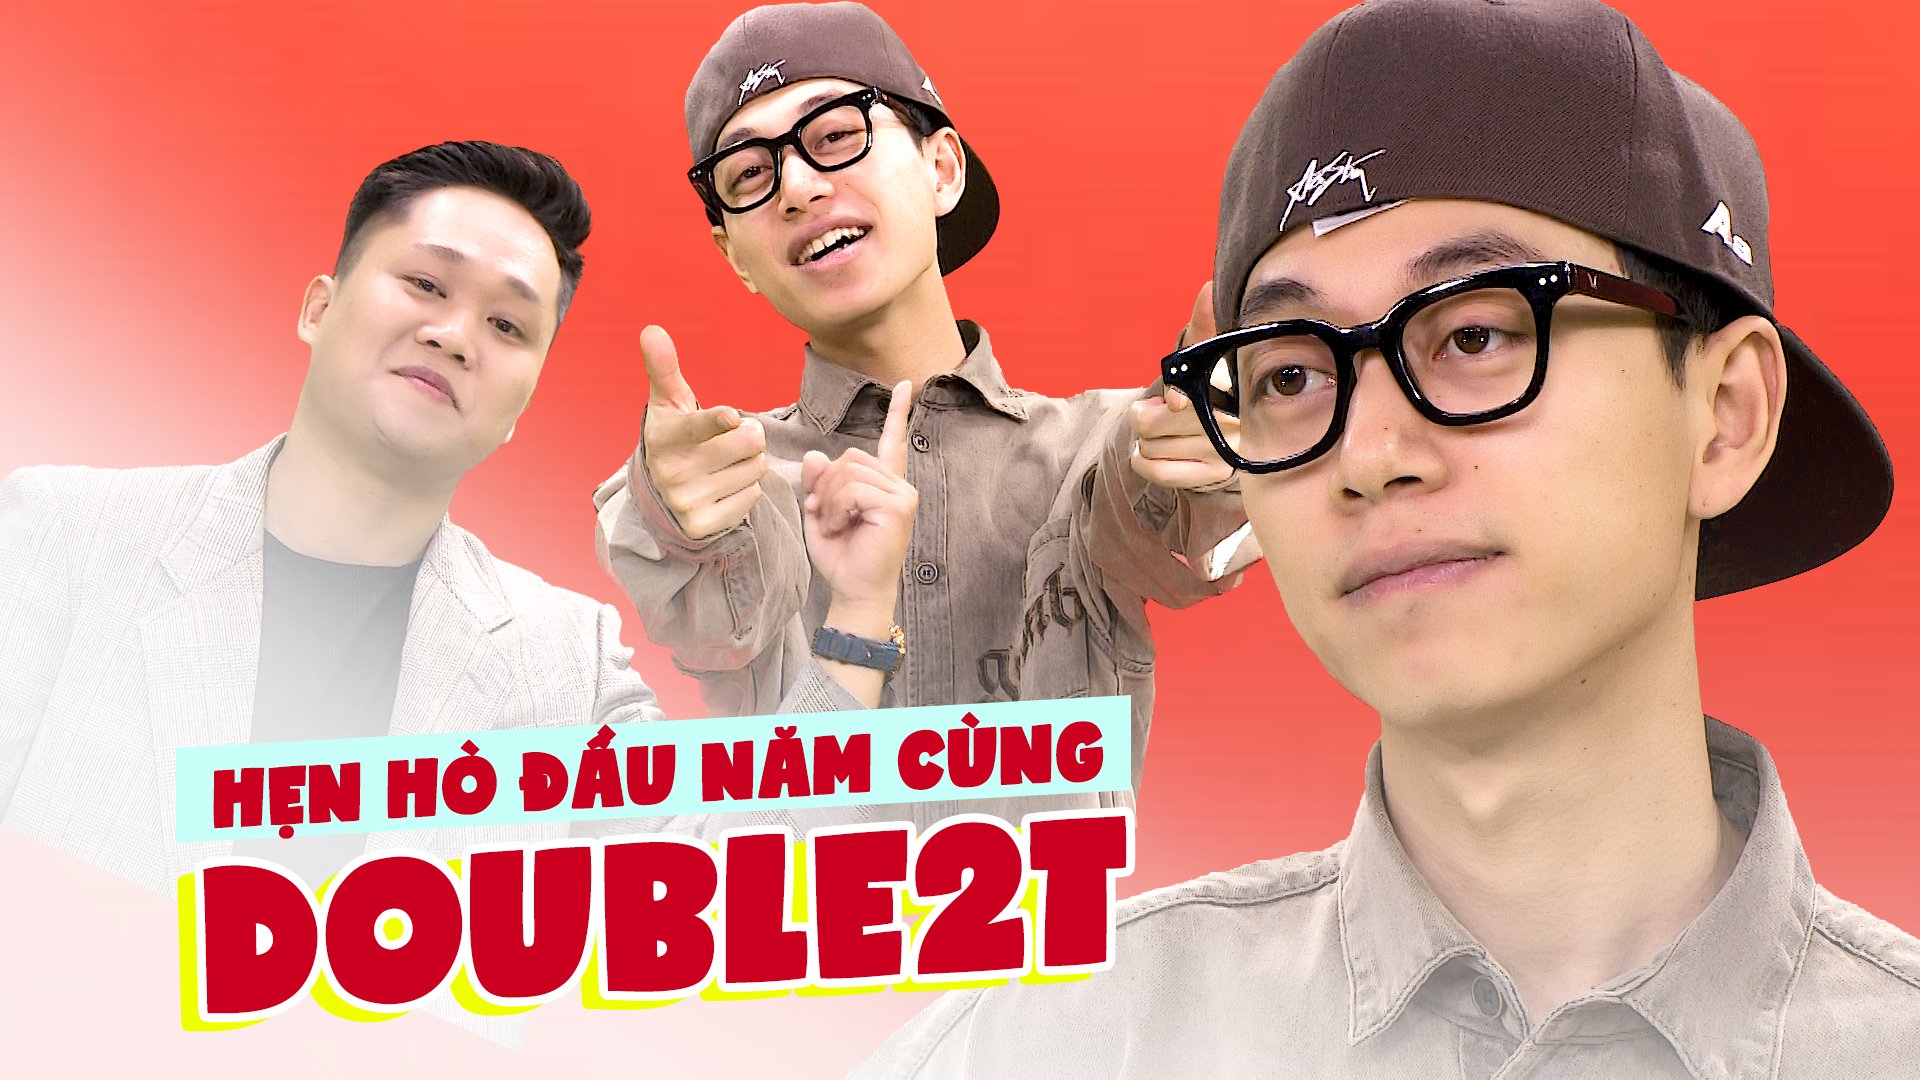 Giao lưu đầu năm với rapper Double2T, live 'À lôi' cực chất cùng MC Phước Nhân- Ảnh 1.